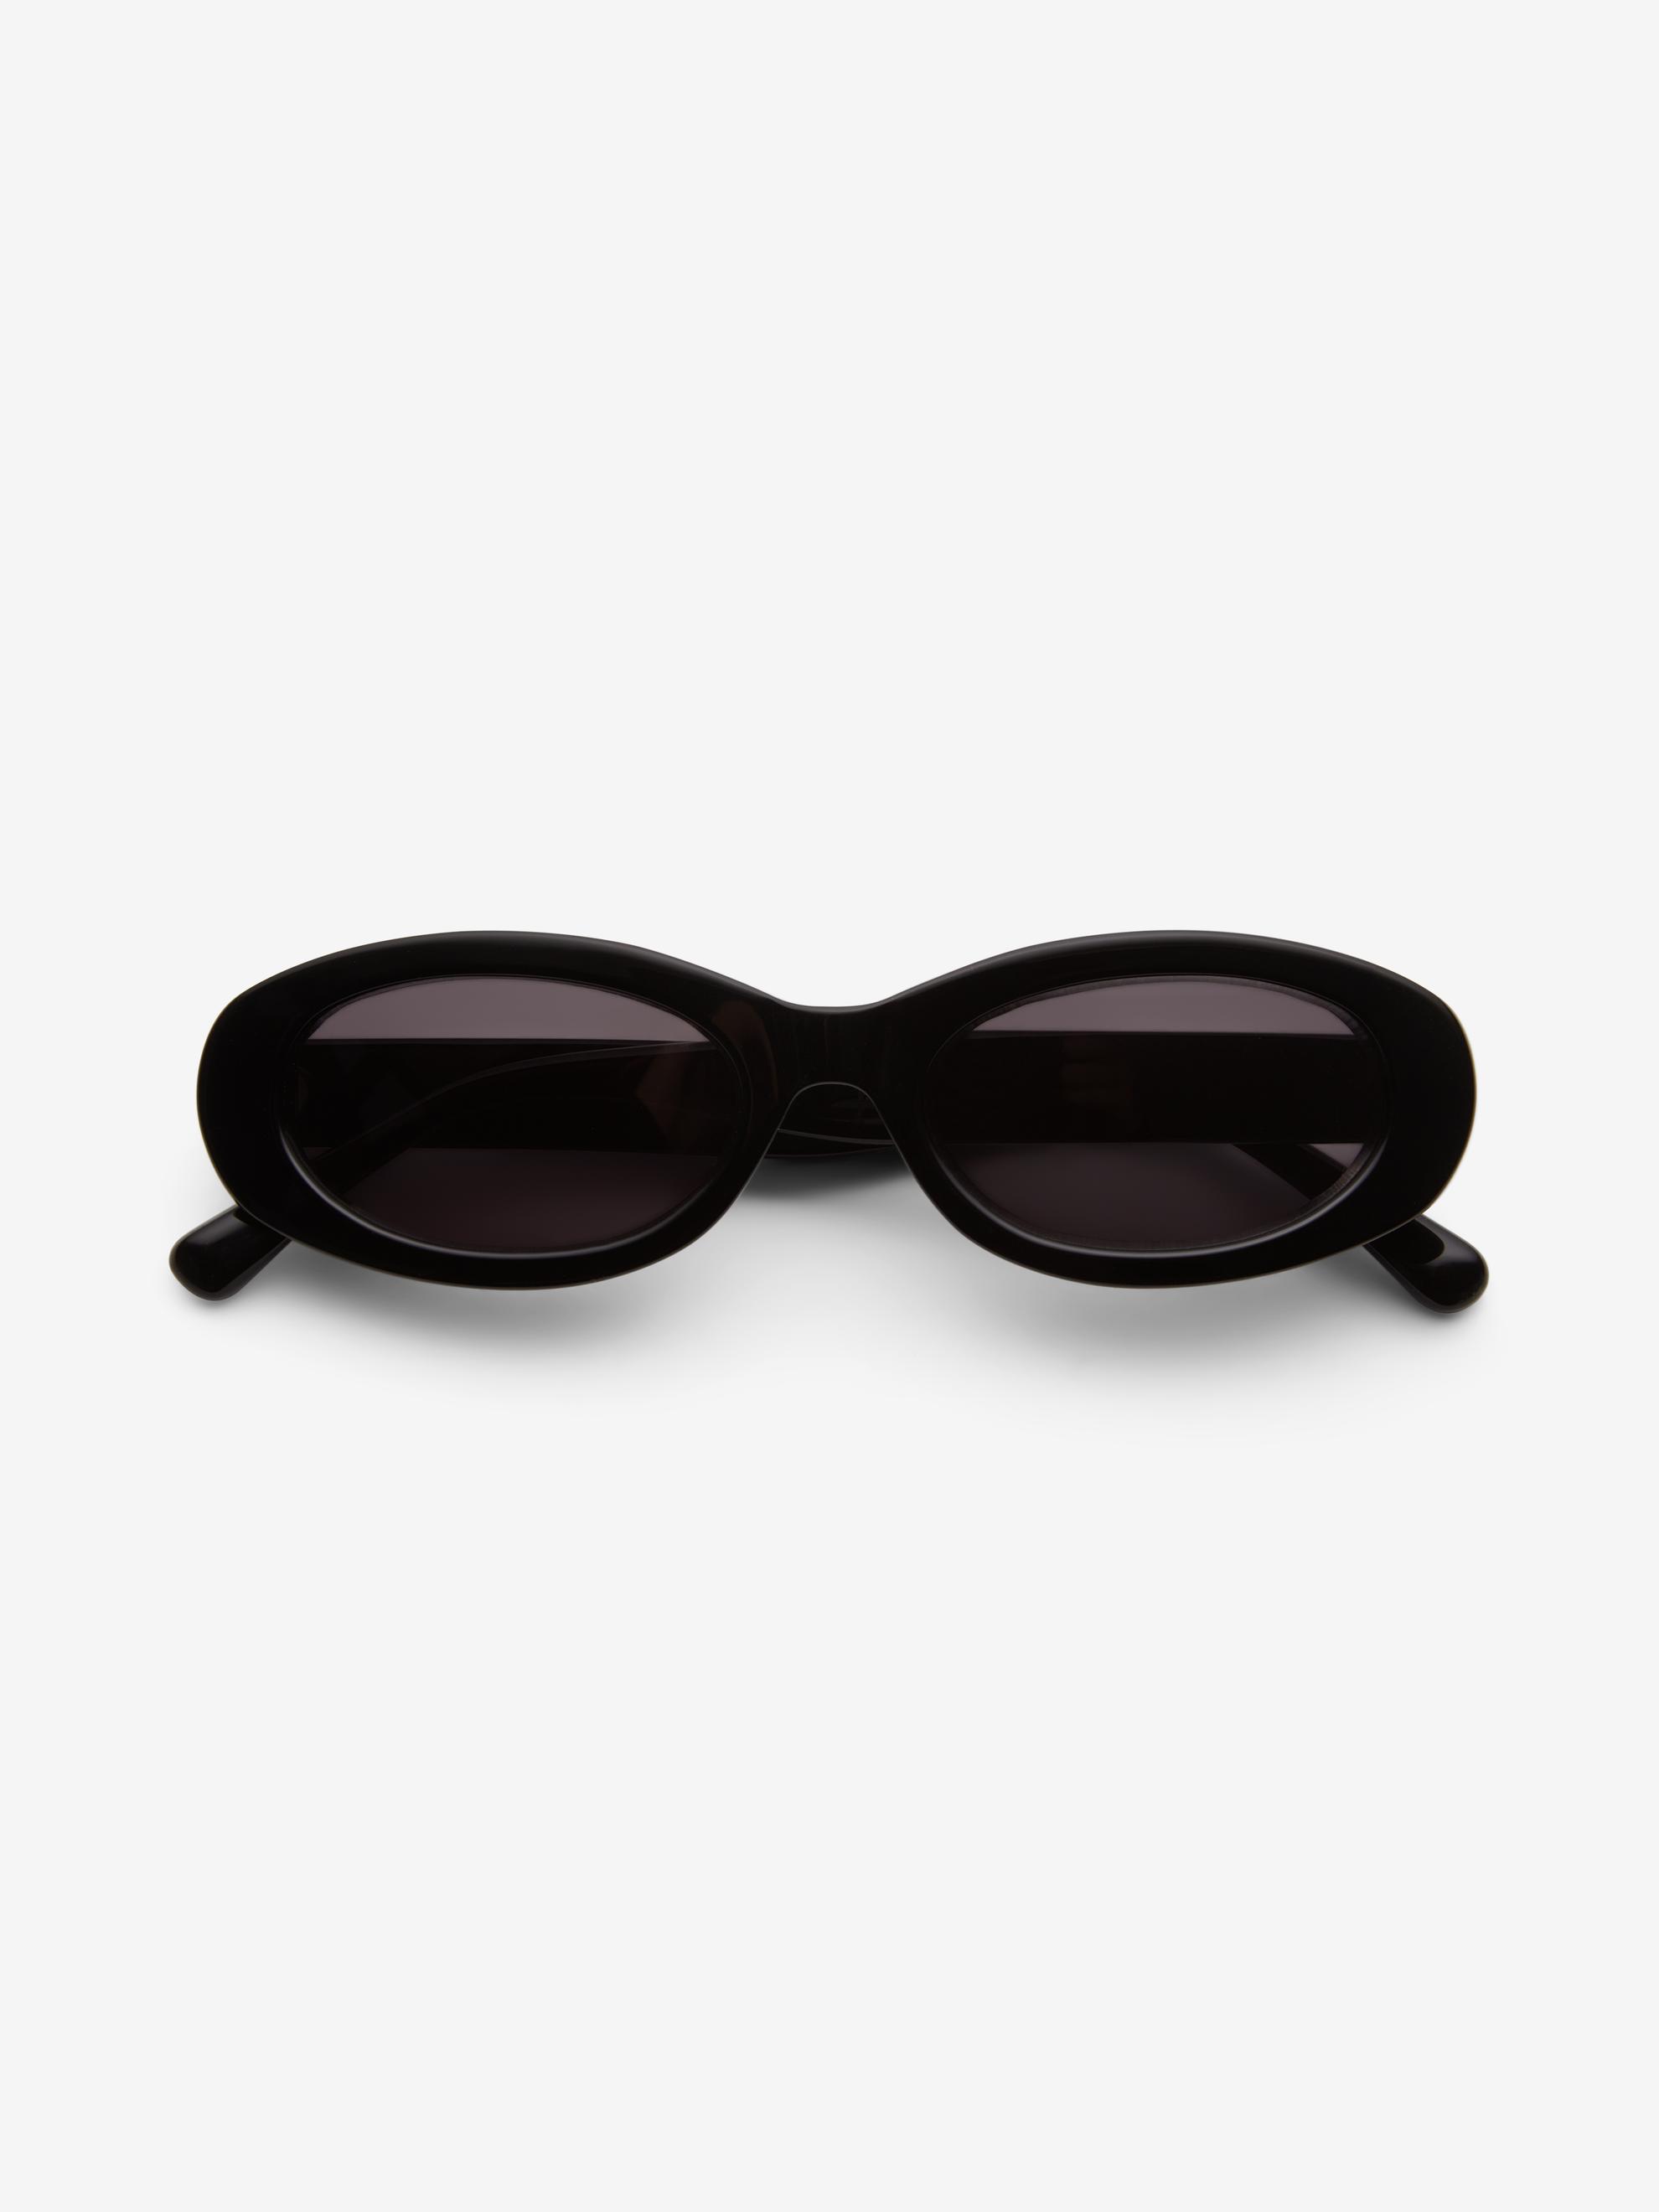 Wide oval sunglasses för 1800 kr på Dagmar